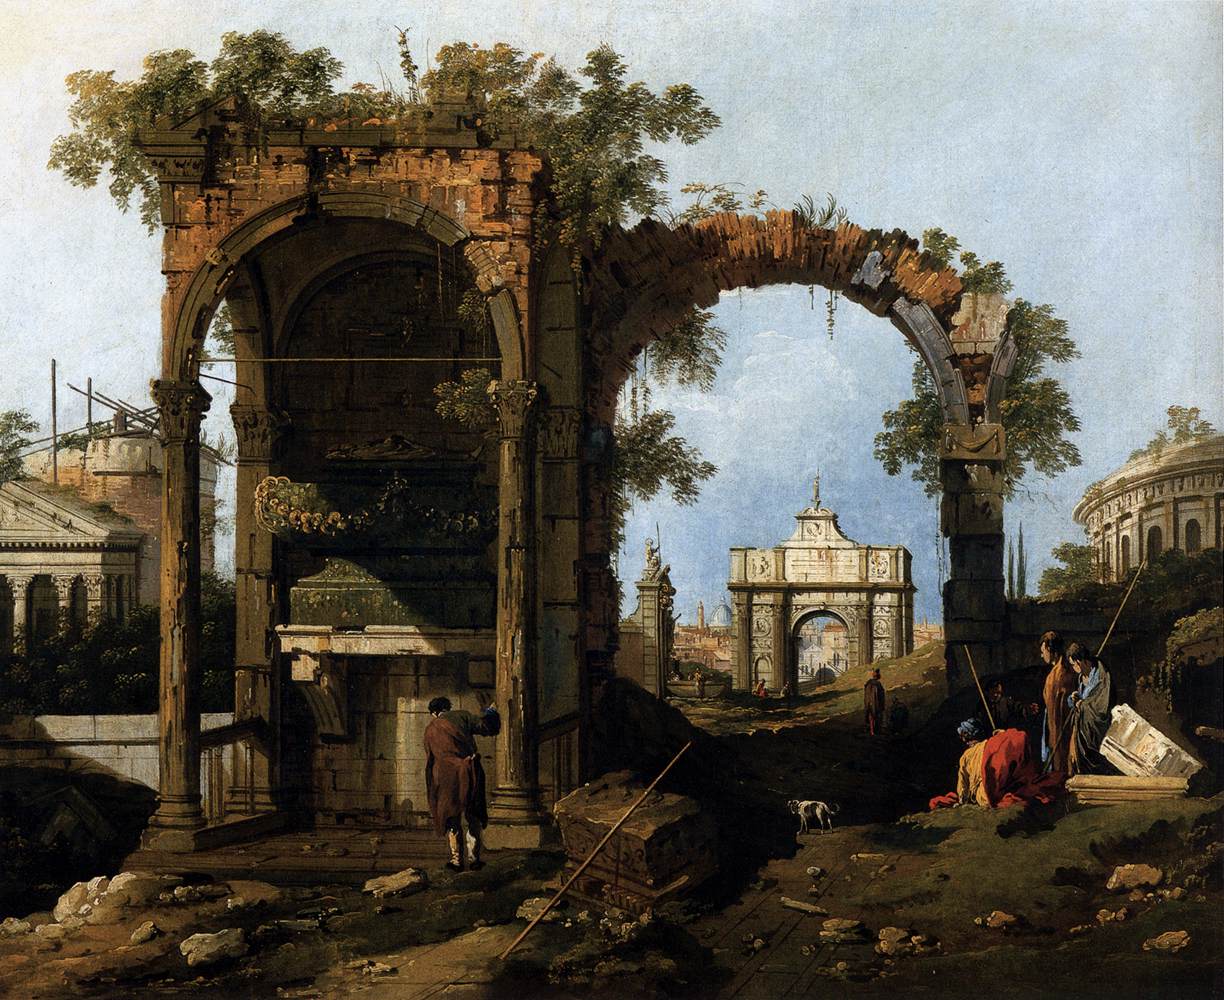 Capricho avec des ruines et des bâtiments classiques